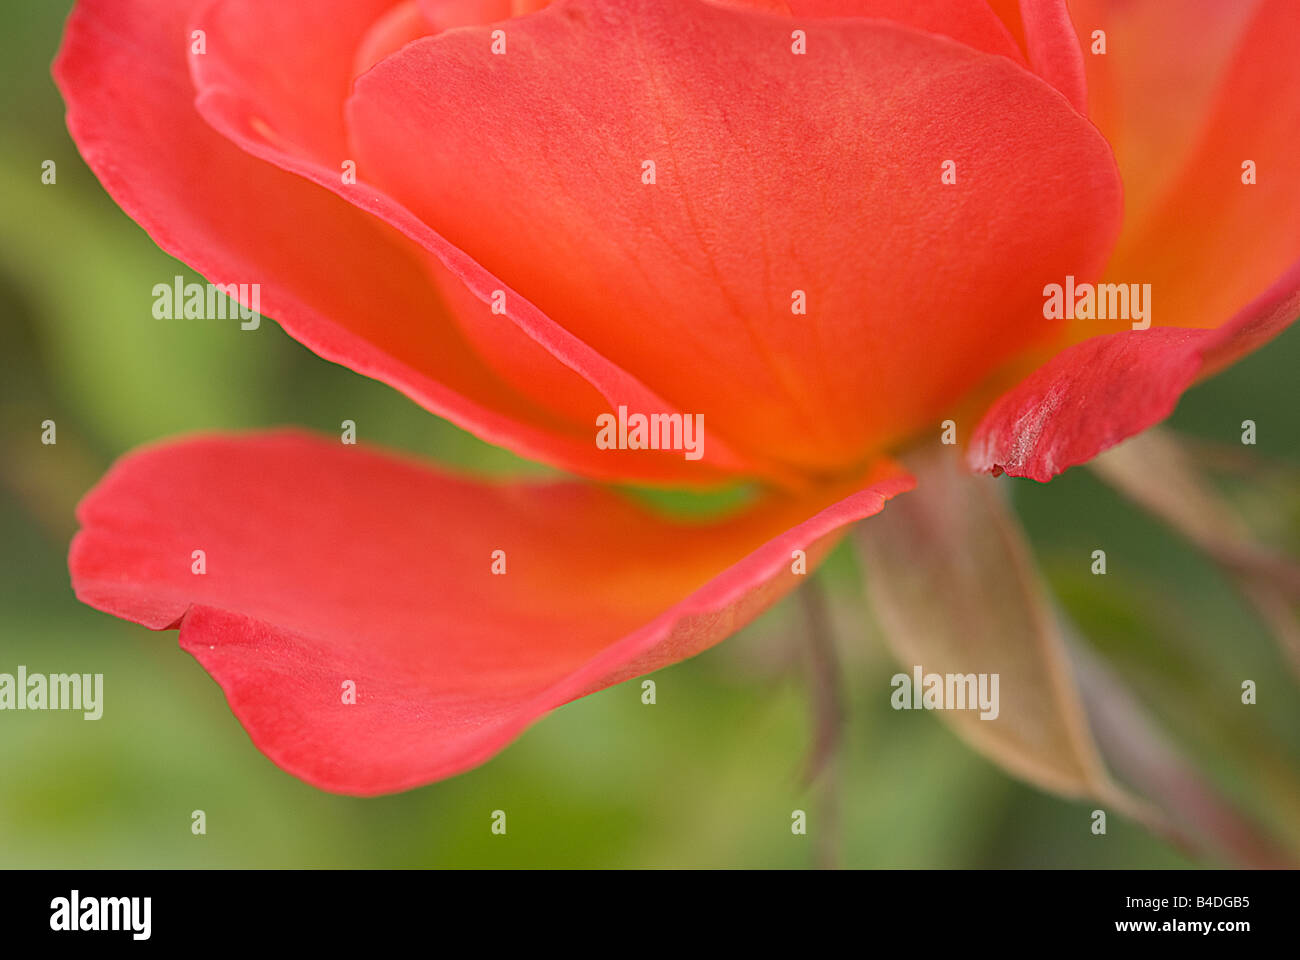 Nahaufnahme von einem Pfirsich Rosenblatt mit dem Namen Granada Rose Stockfoto